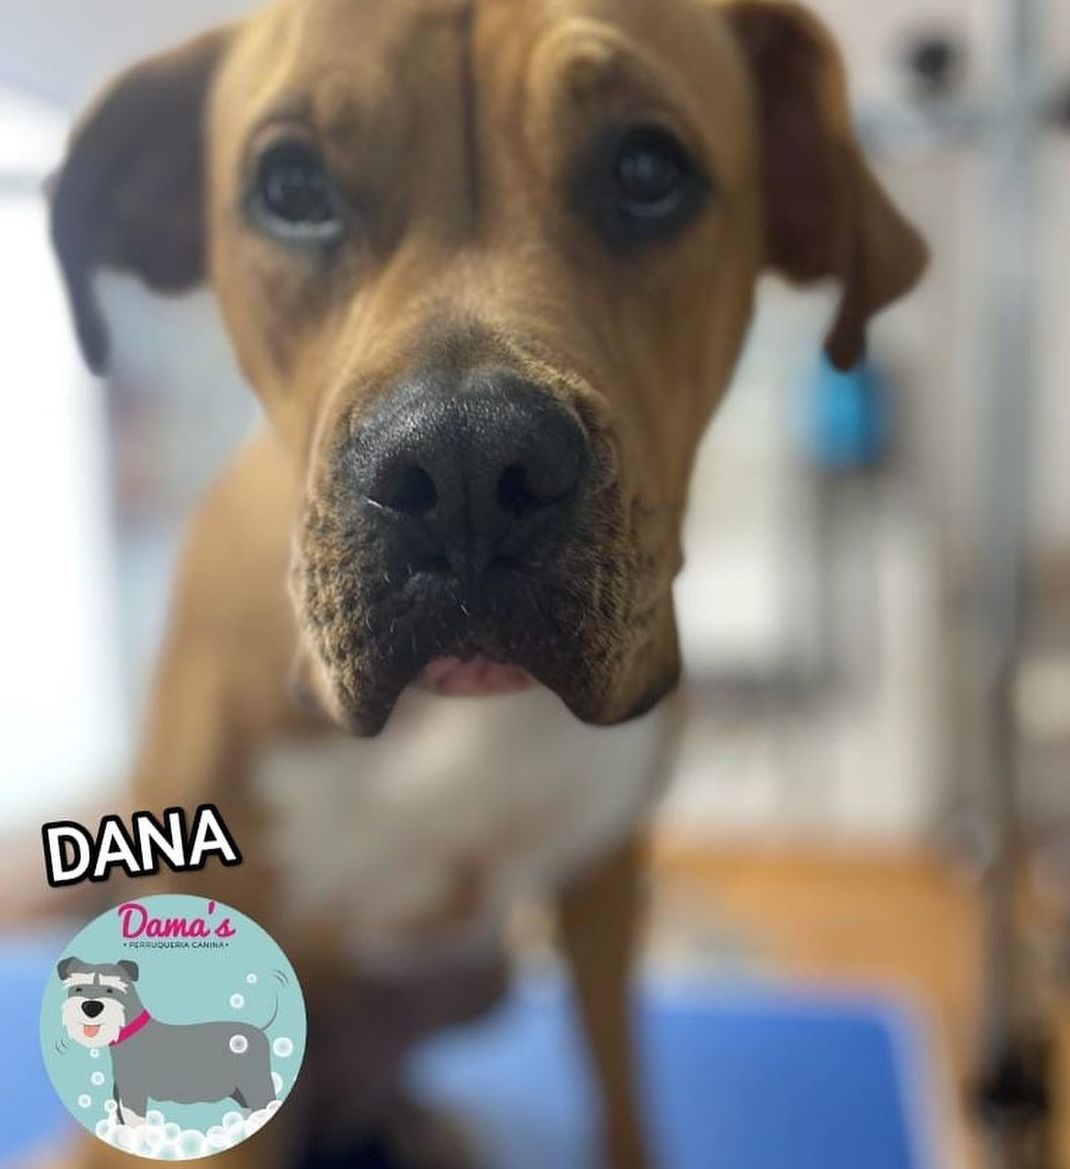 Foto 76 de Peluquería canina con todo tipo de tratamientos para tu mascota en  | Dama's